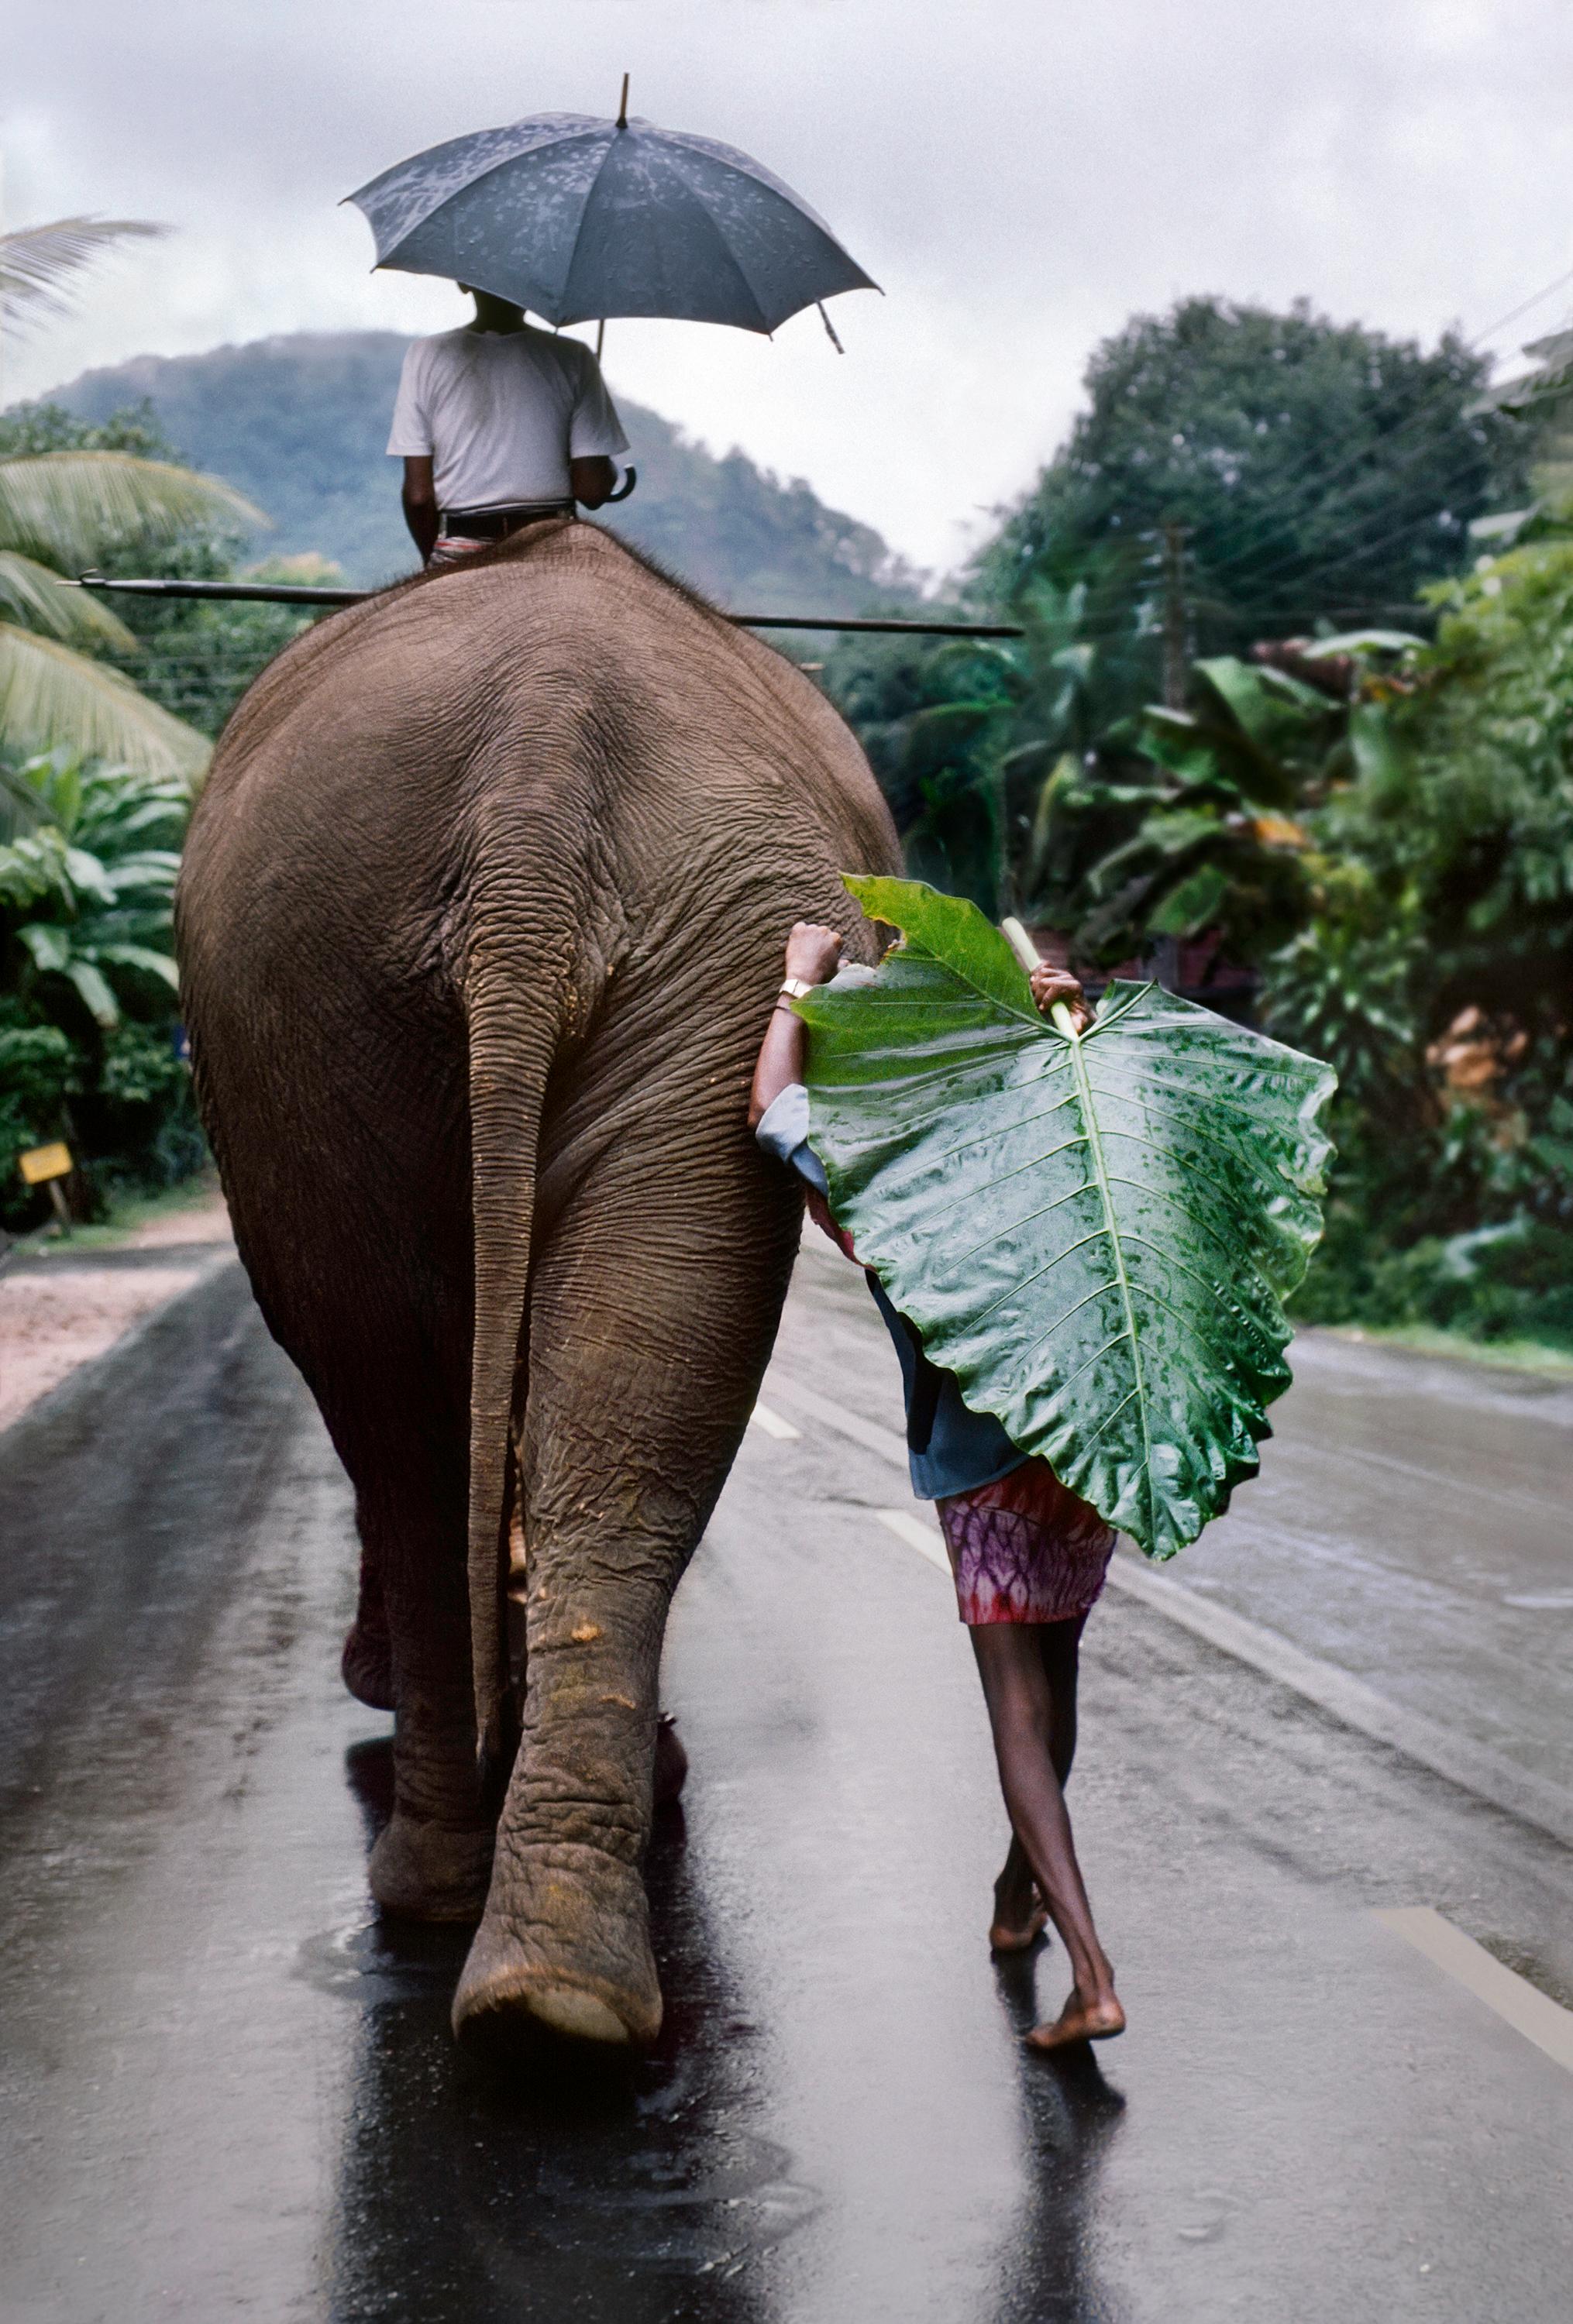 Un jeune homme marche derrière un éléphant, Sri Lanka, 1995 - Steve McCurry
Signé et numéroté sur l'étiquette de l'édition du photographe au verso.
A.I.C.C. numérique
24 x 20 pouces 
Edition de 30

Egalement disponible en deux tailles plus grandes,